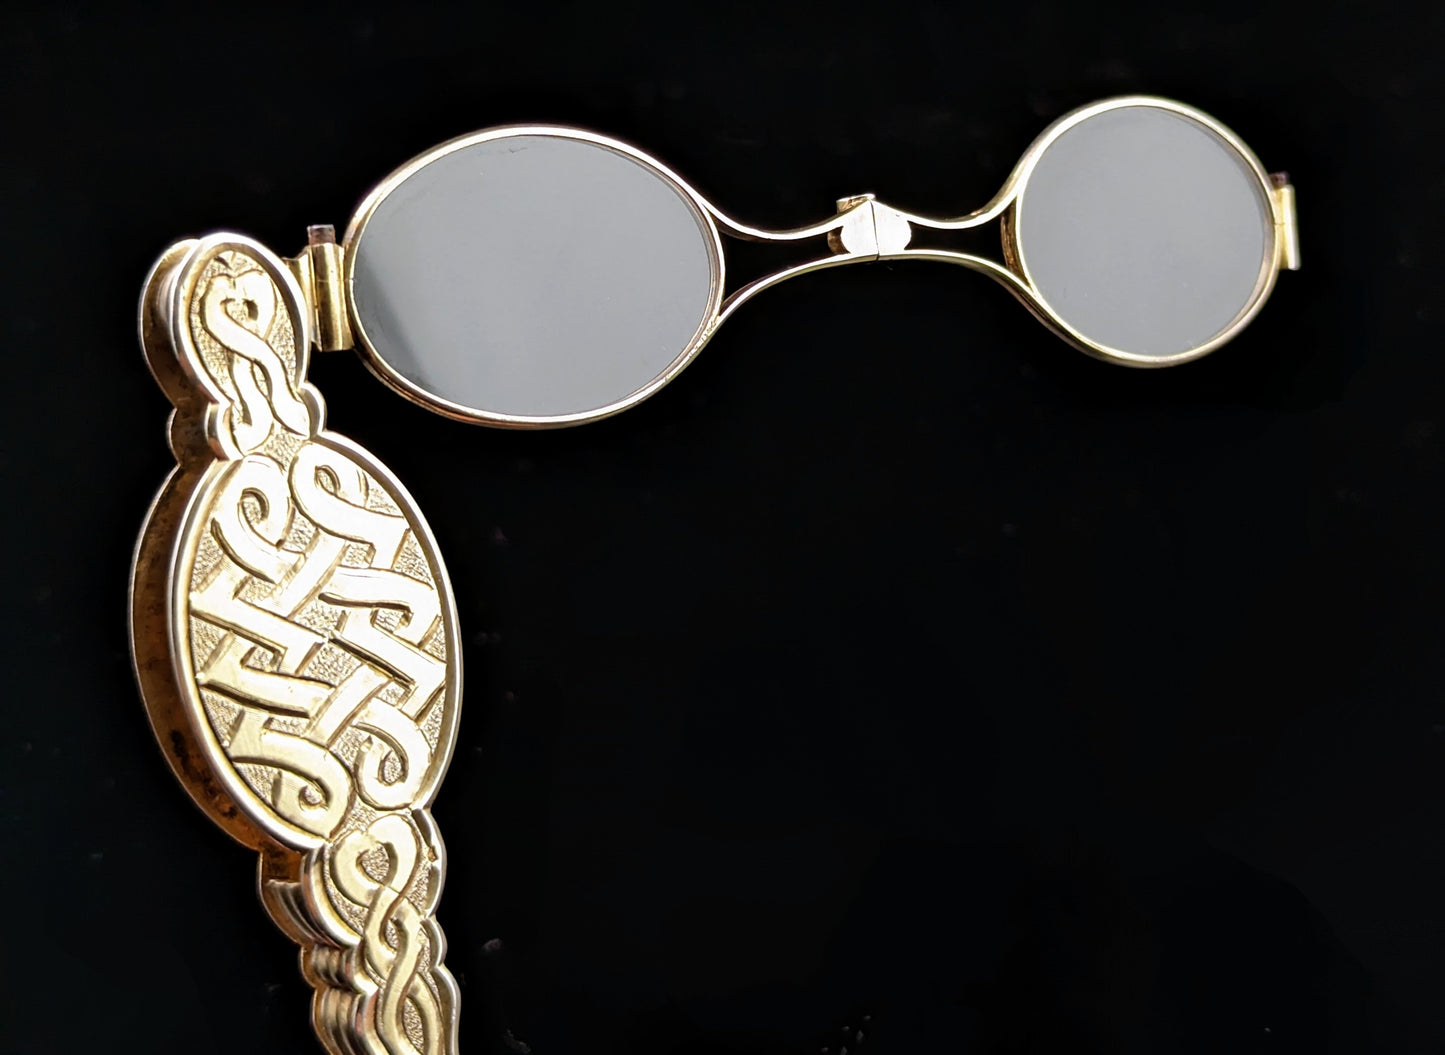 Antique French silver gilt lorgnettes, spectacles, Art Nouveau